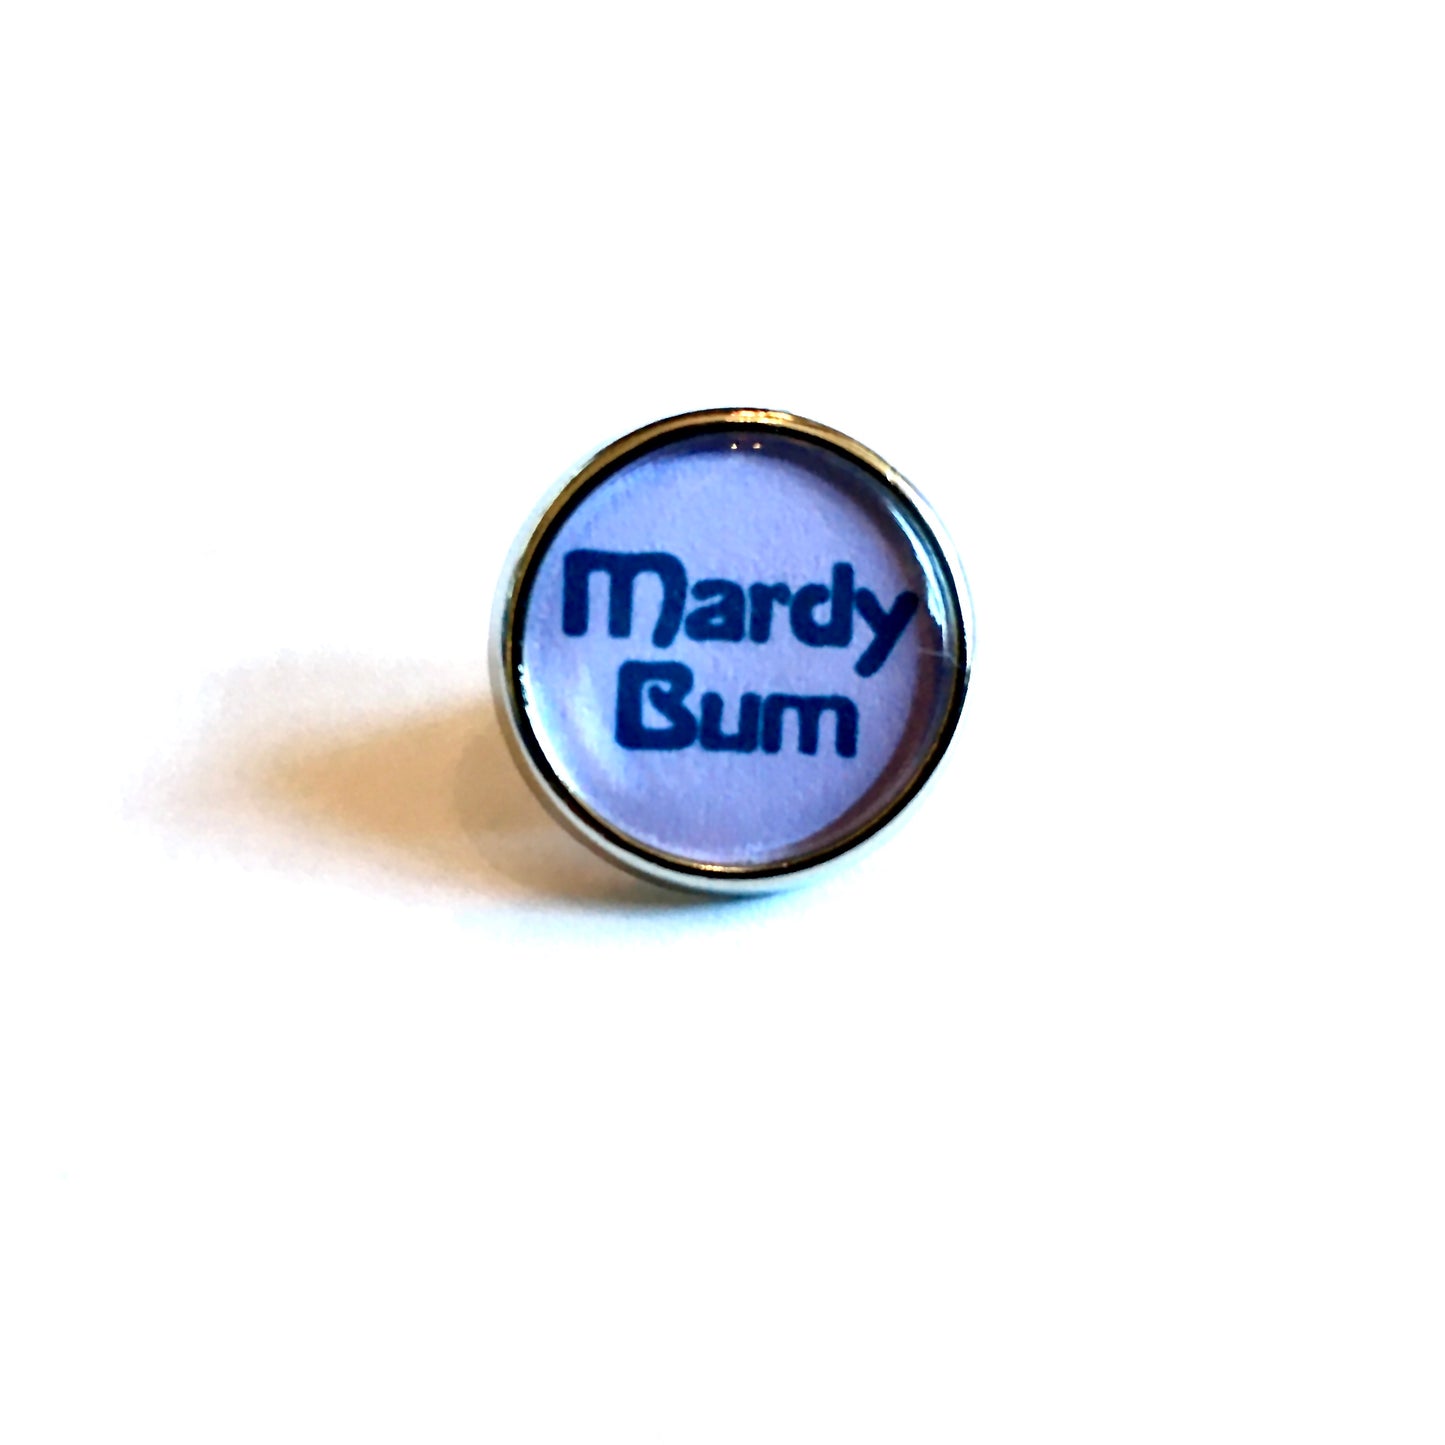 Mardy Bum Lapel Pin - Last few!